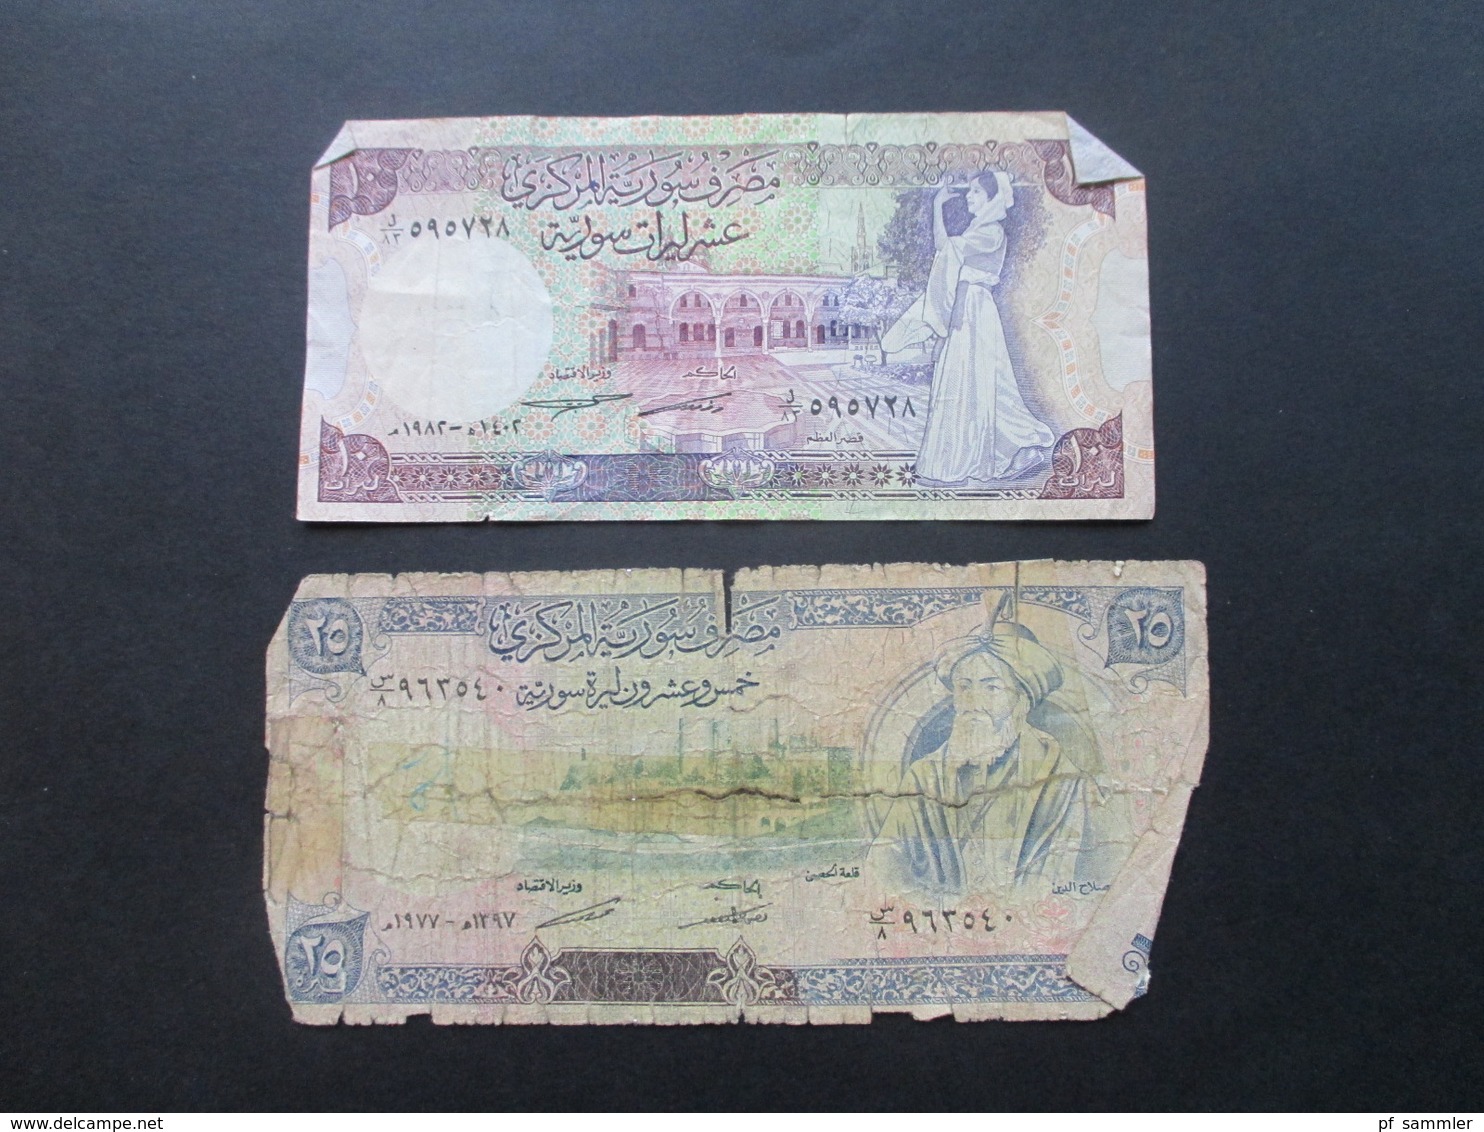 Konvolut Geldscheine / Banknoten naher Osten Syrien / Libanon / Israel / Ägypten 1970er Jahre - 2009 Fundgrube???